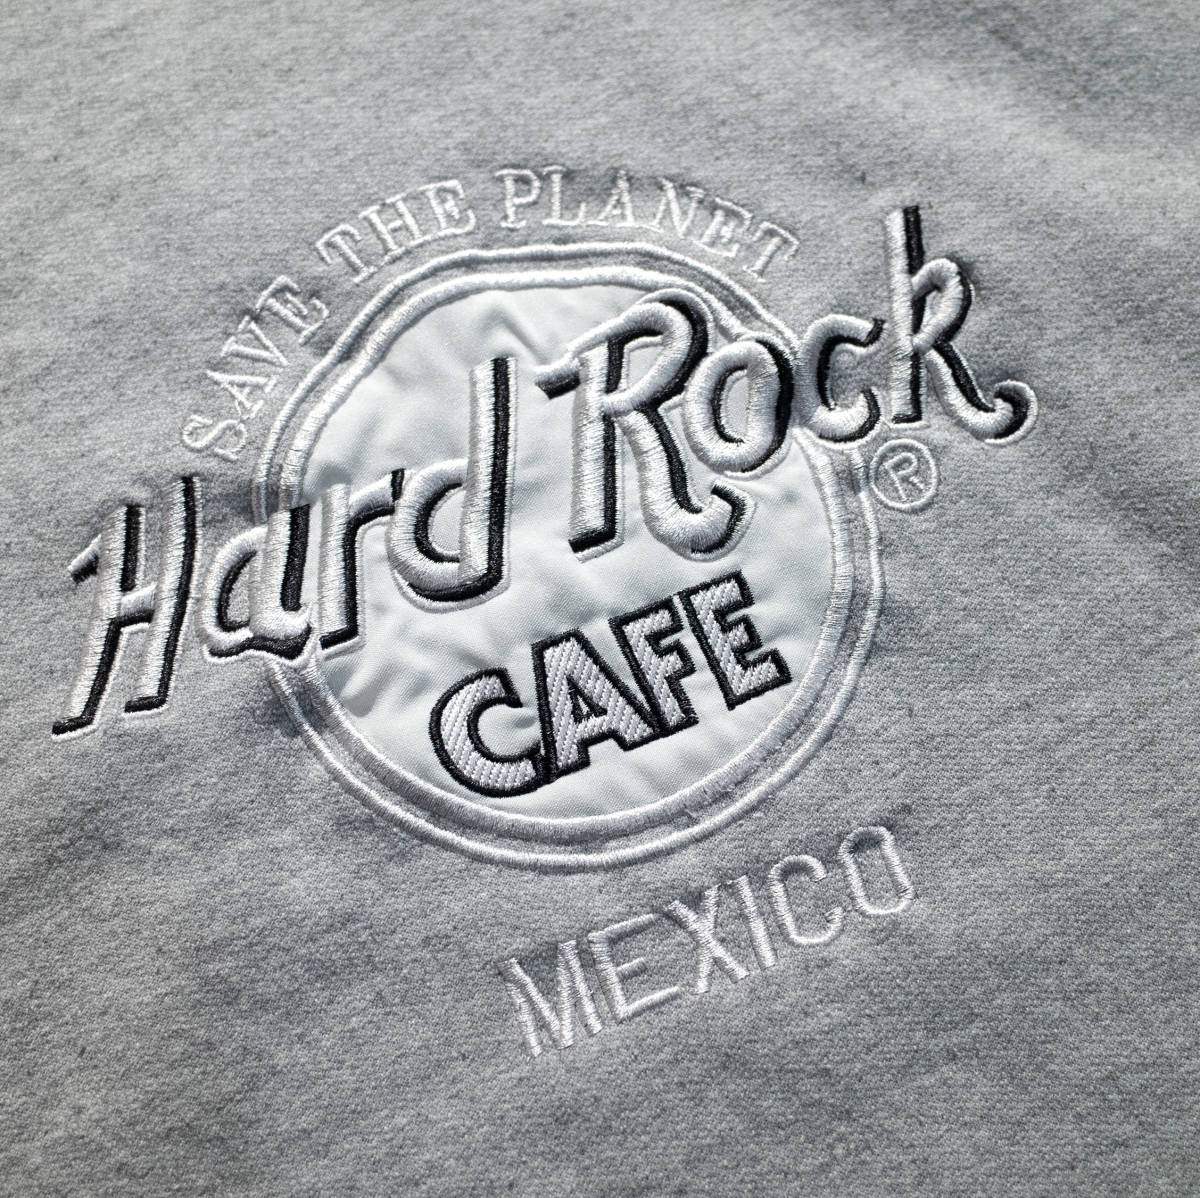 XL / USA製 ハードロックカフェ HARD ROCK CAFE メキシコ 銀刺繍 デカロゴ クルーネック スウェット グレー 灰色 古着男子  女子 トレーナー